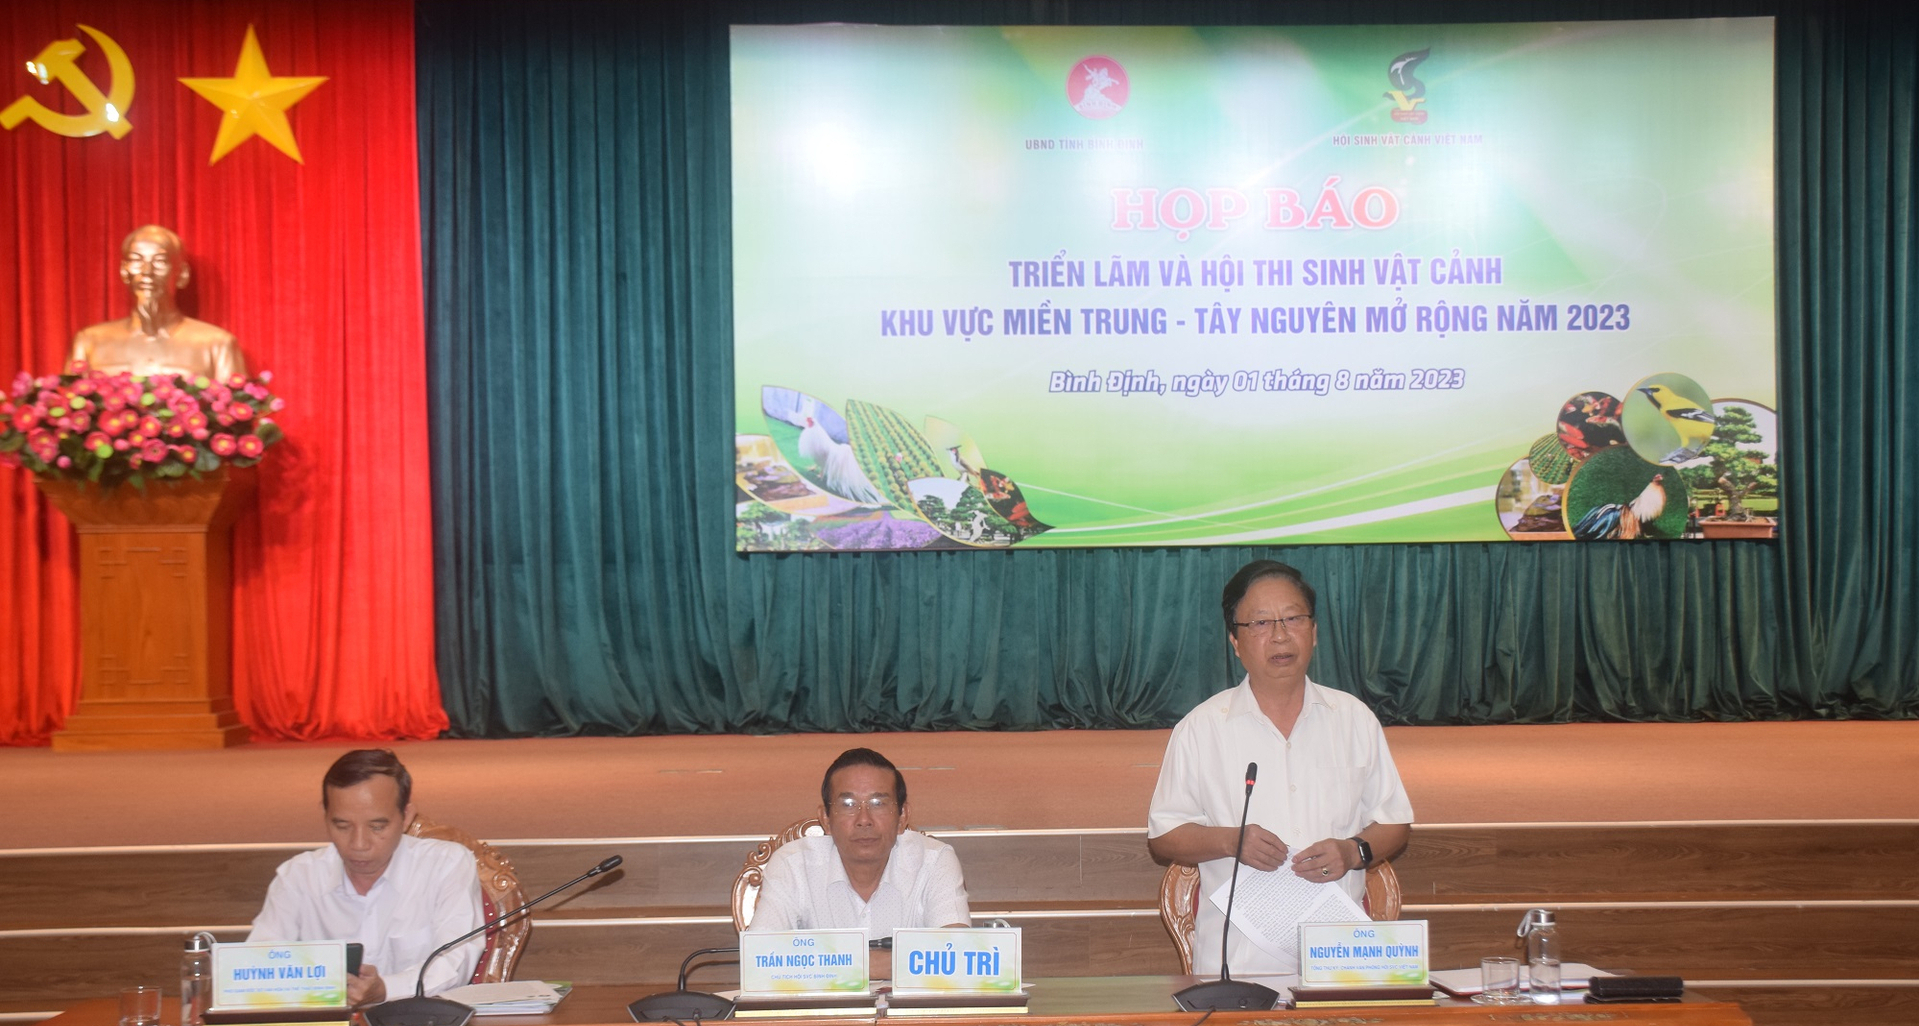 Ông Nguyễn Mạnh Quỳnh, Tổng Thư ký Hội Sinh vật cảnh Việt Nam, phát biểu tại buổi họp báo. Ảnh: V.Đ.T.